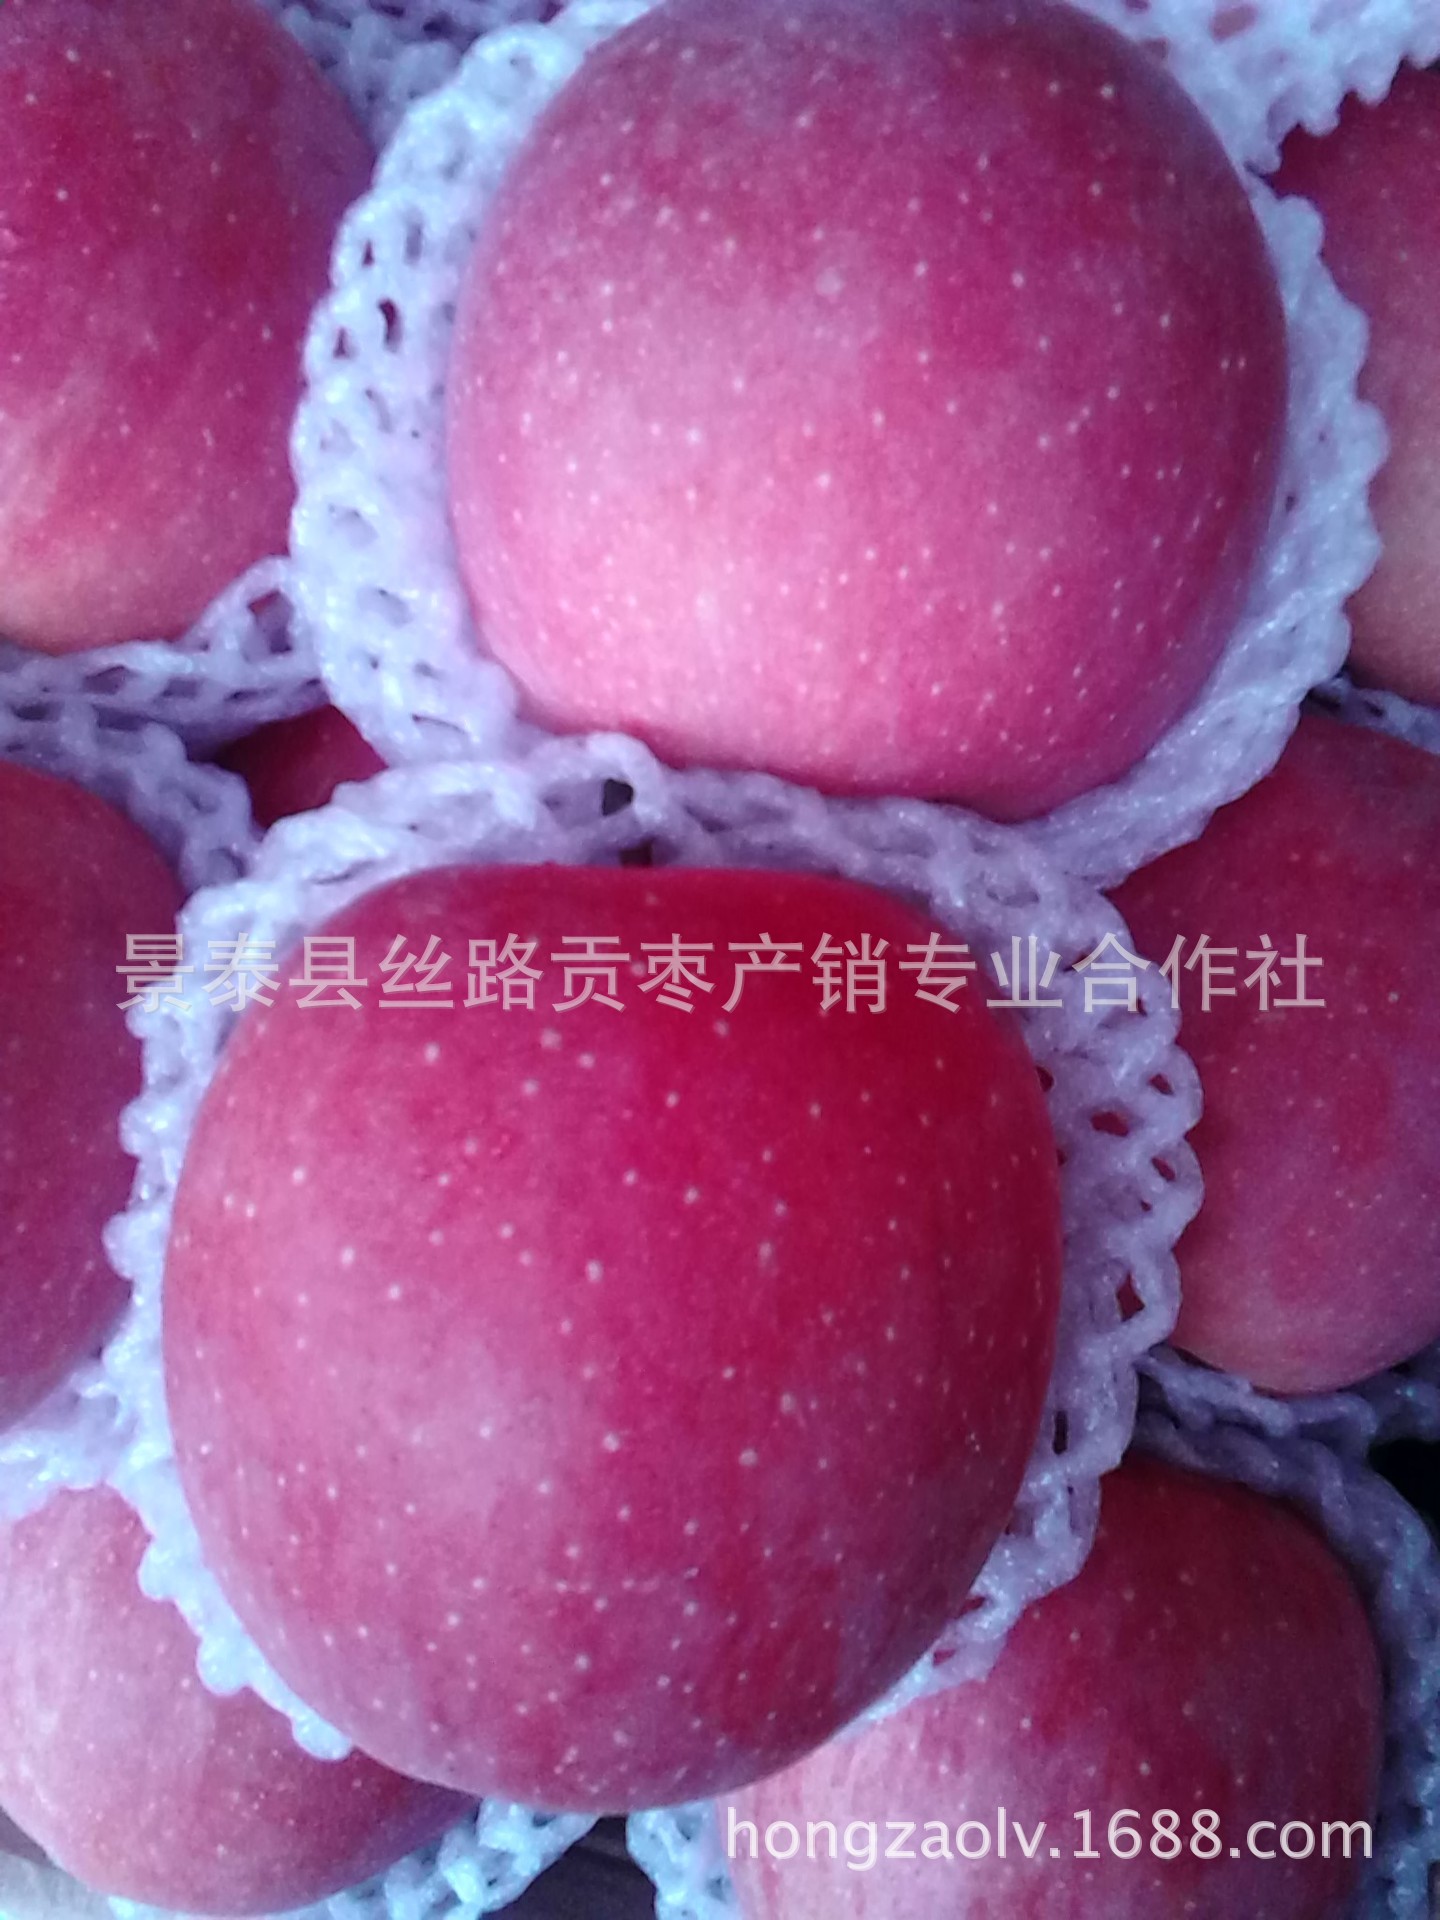 水果批发 丝路贡果 红富士苹果 有机食品